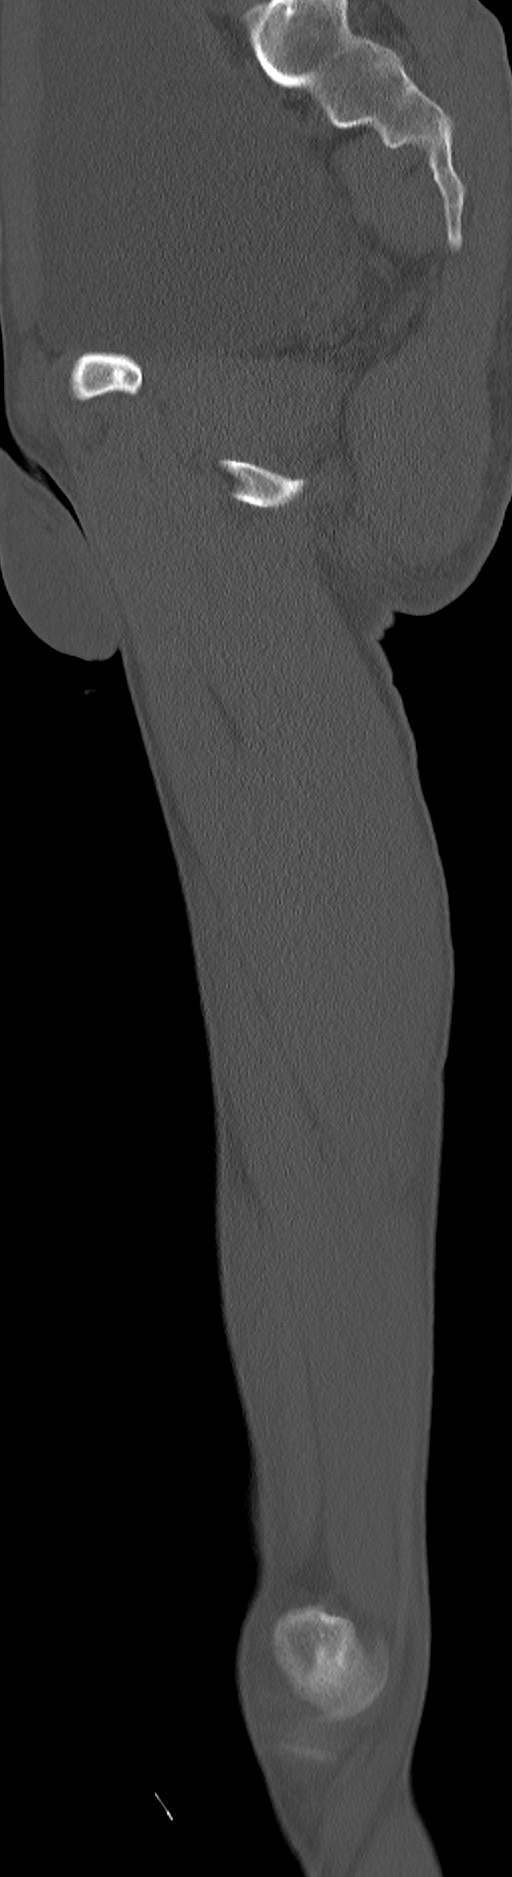 Chronic osteomyelitis (with sequestrum) (Radiopaedia 74813-85822 C 47).jpg